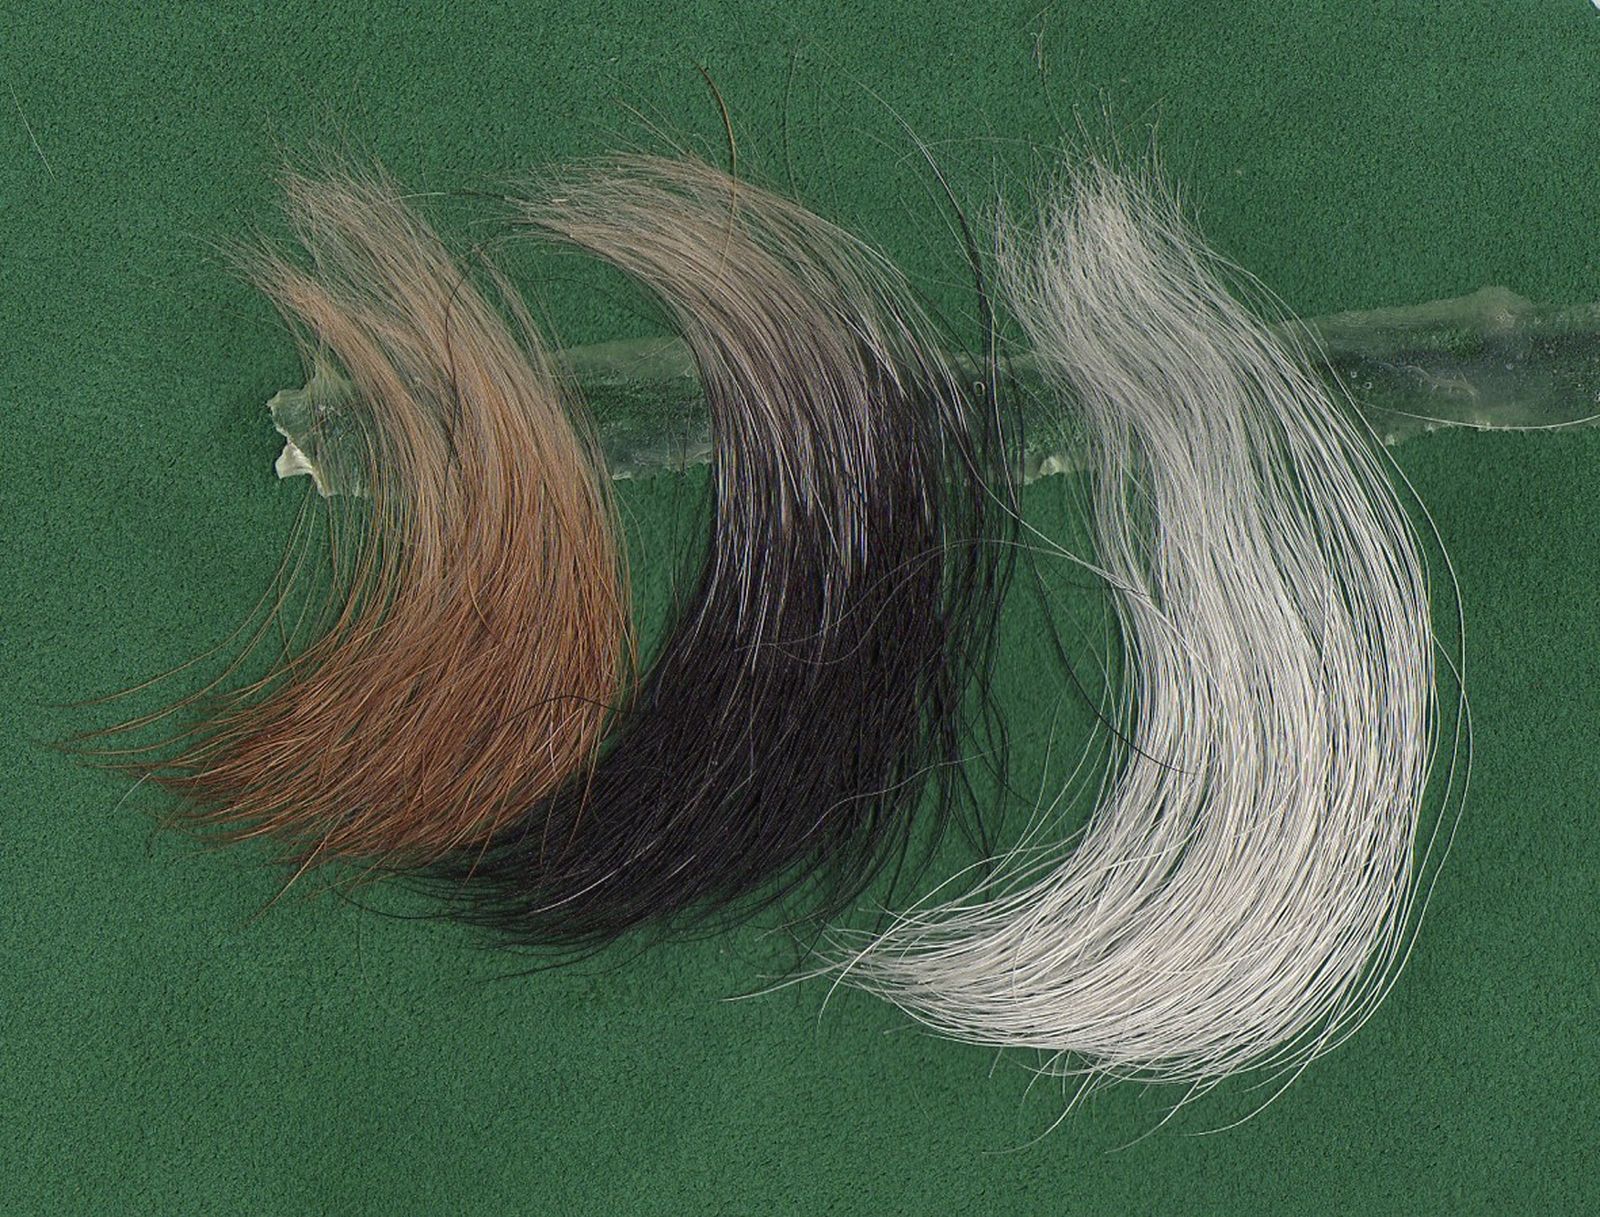 Haare vom Fox Terrier auf grünem Untergrund, leicht gewellt, mit fester Struktur und kräftiger Farbe